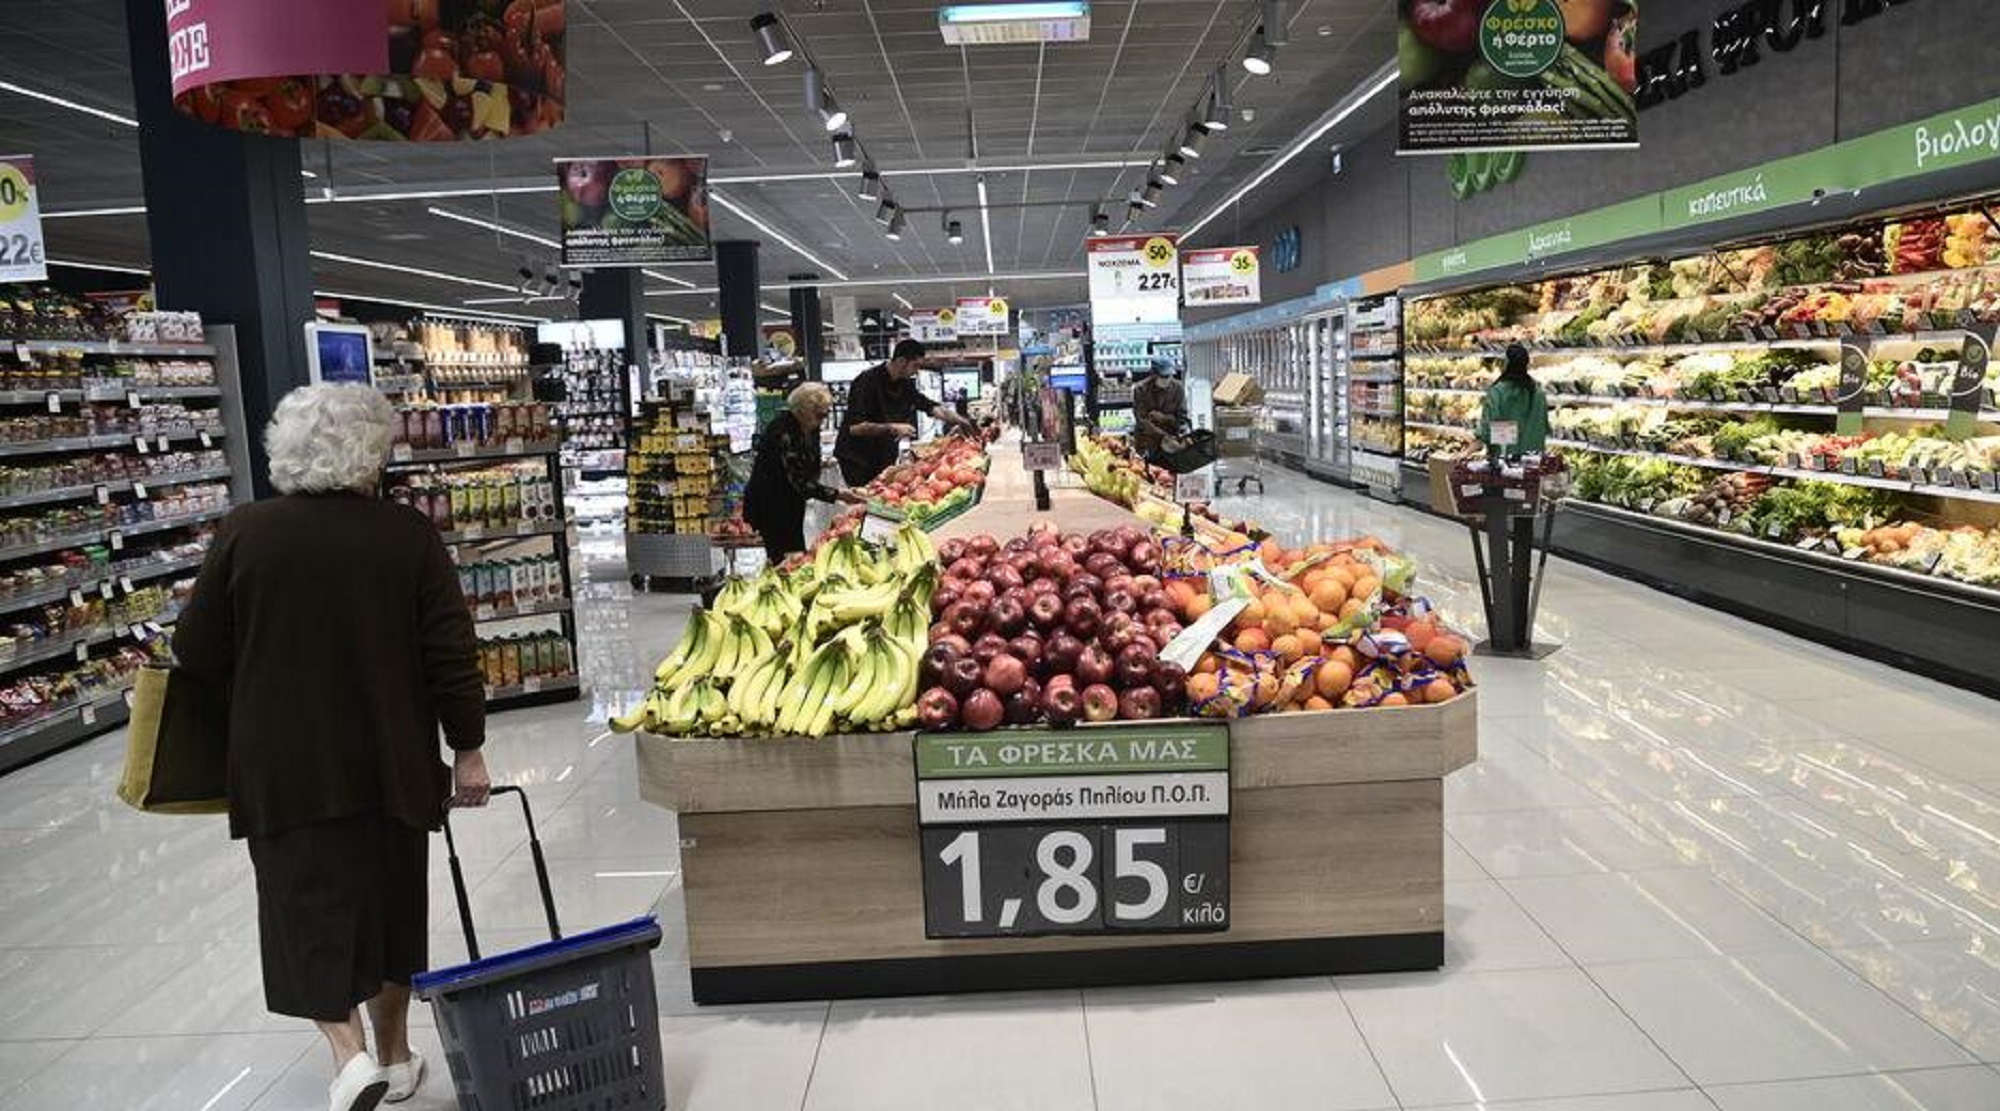 Έρευνα ΙΕΛΚΑ: Ένας στους δύο μείωσε τις αγορές για τρόφιμα και βασικά καταναλωτικά προϊόντα